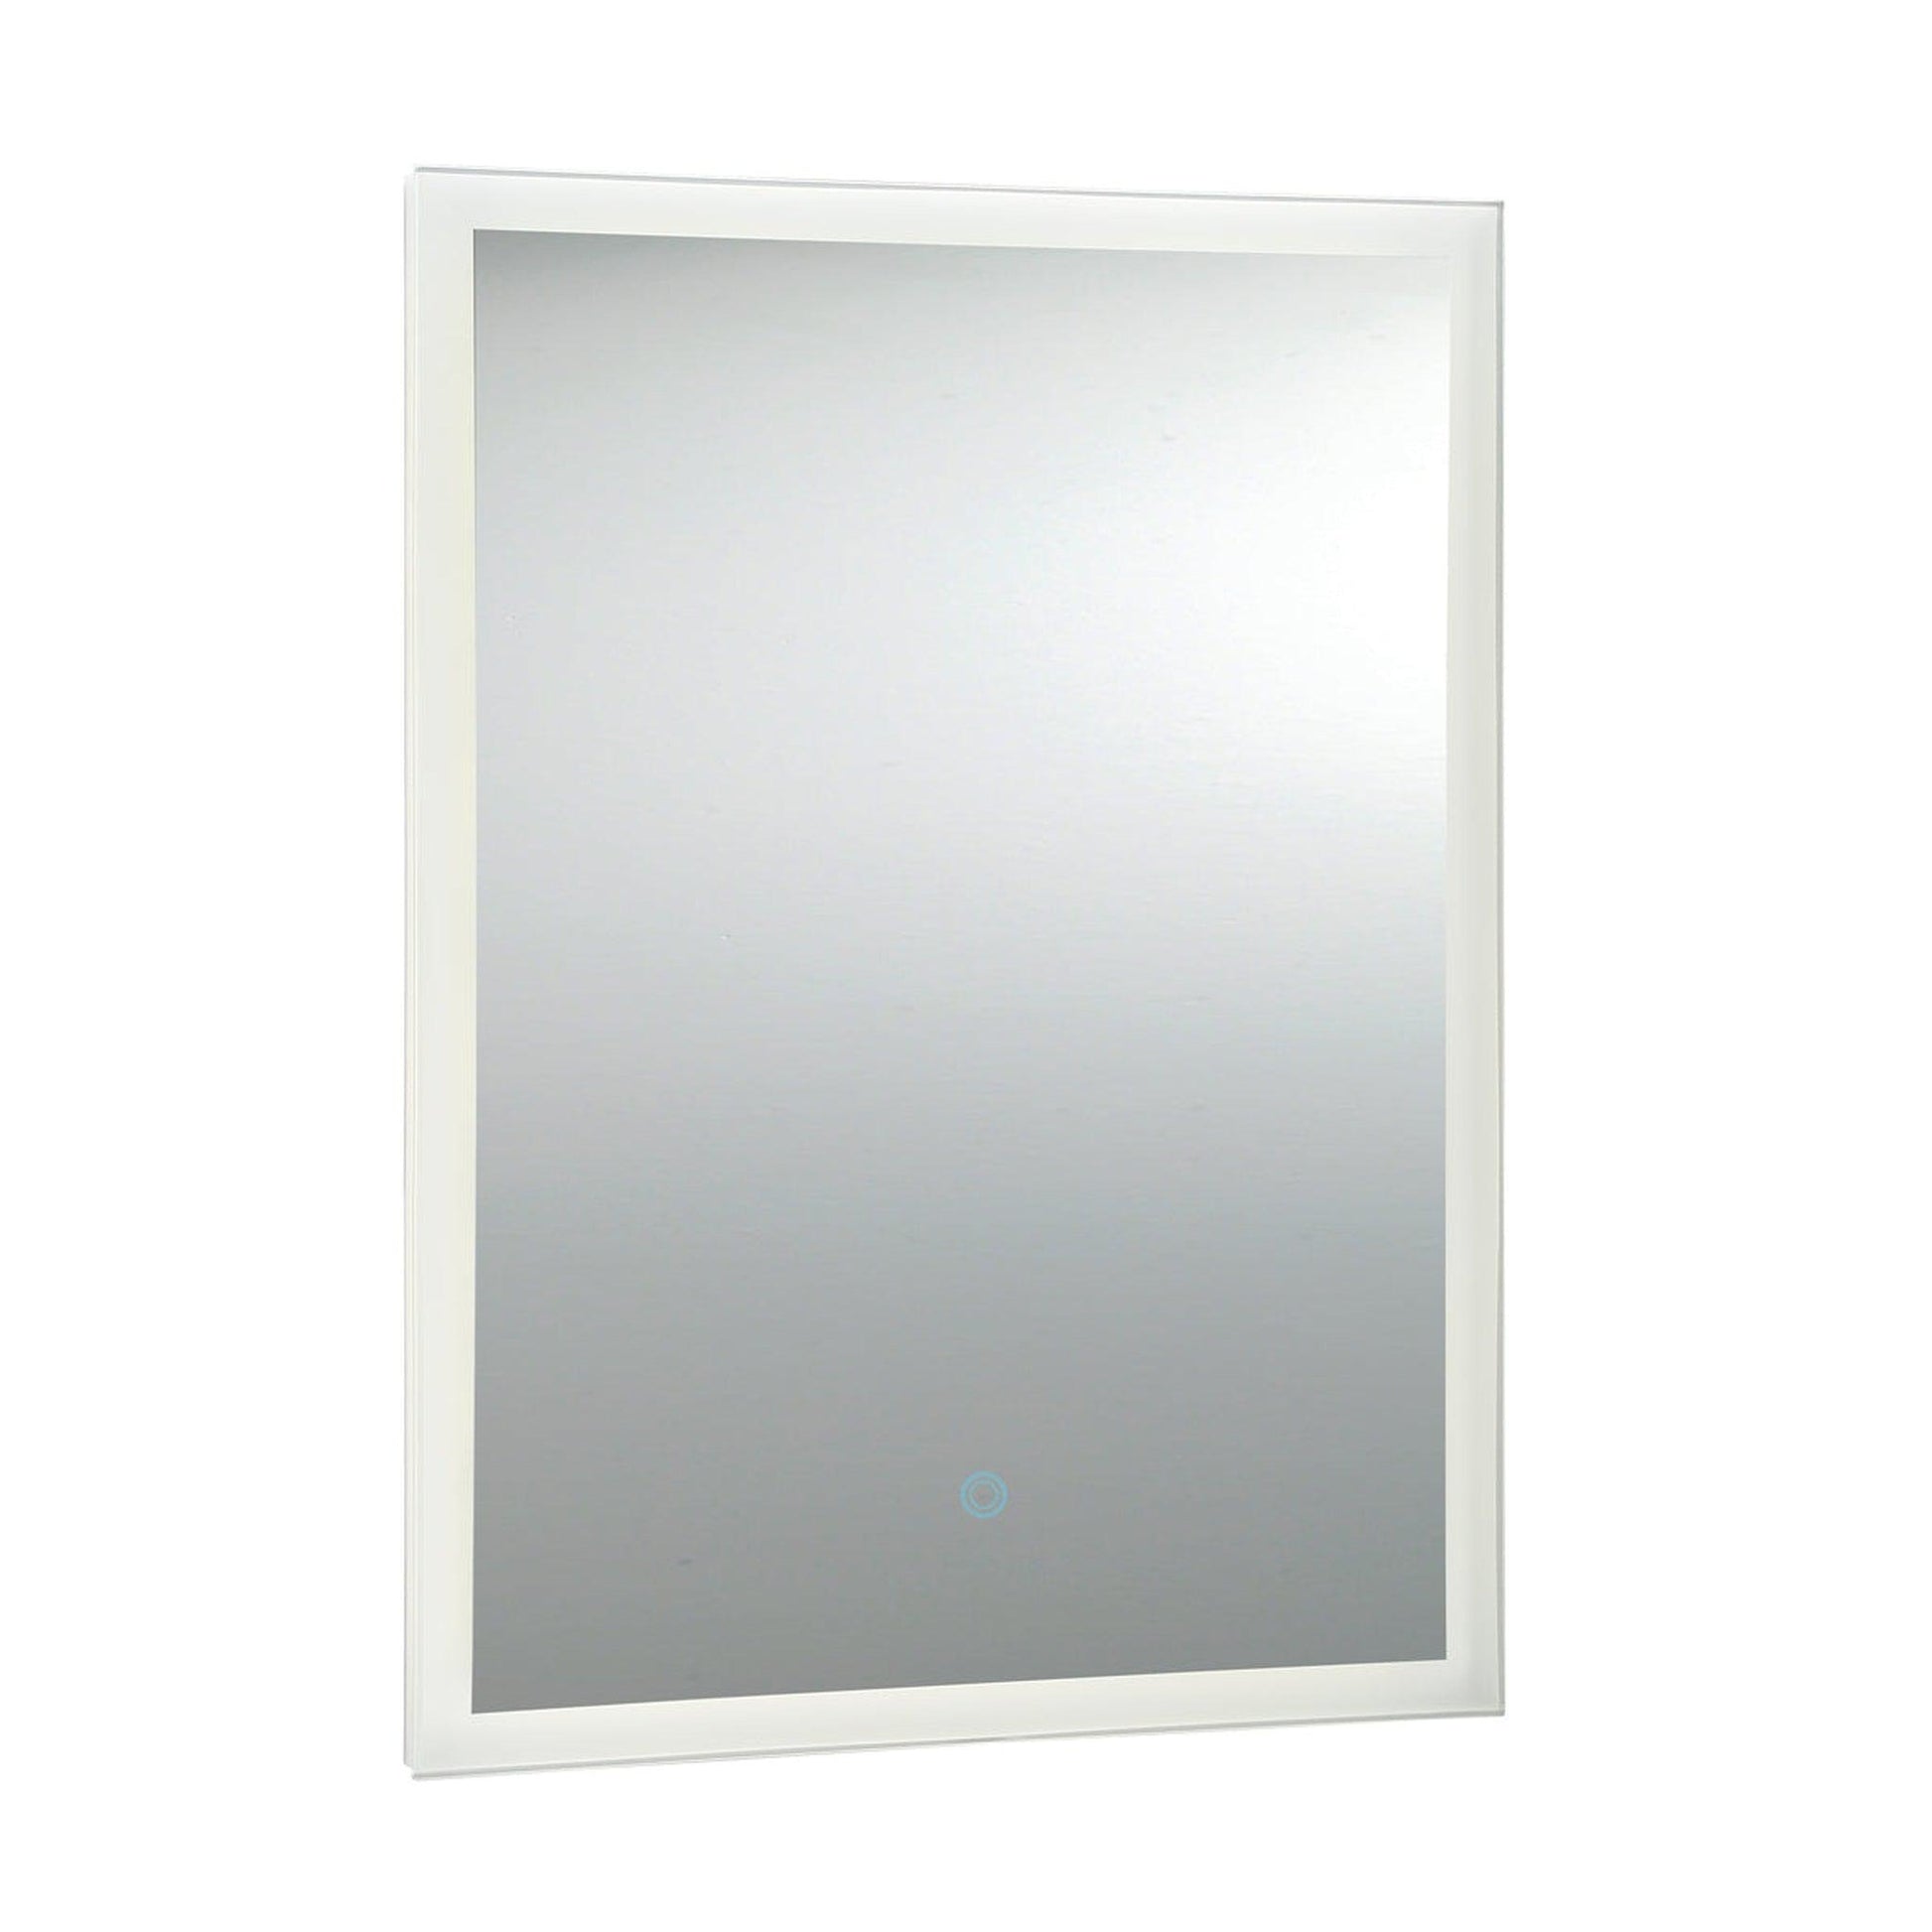 Eurofase Lighting Benji 24" x 32" Rectangular Mirror With Edge-Lit Integrated LED